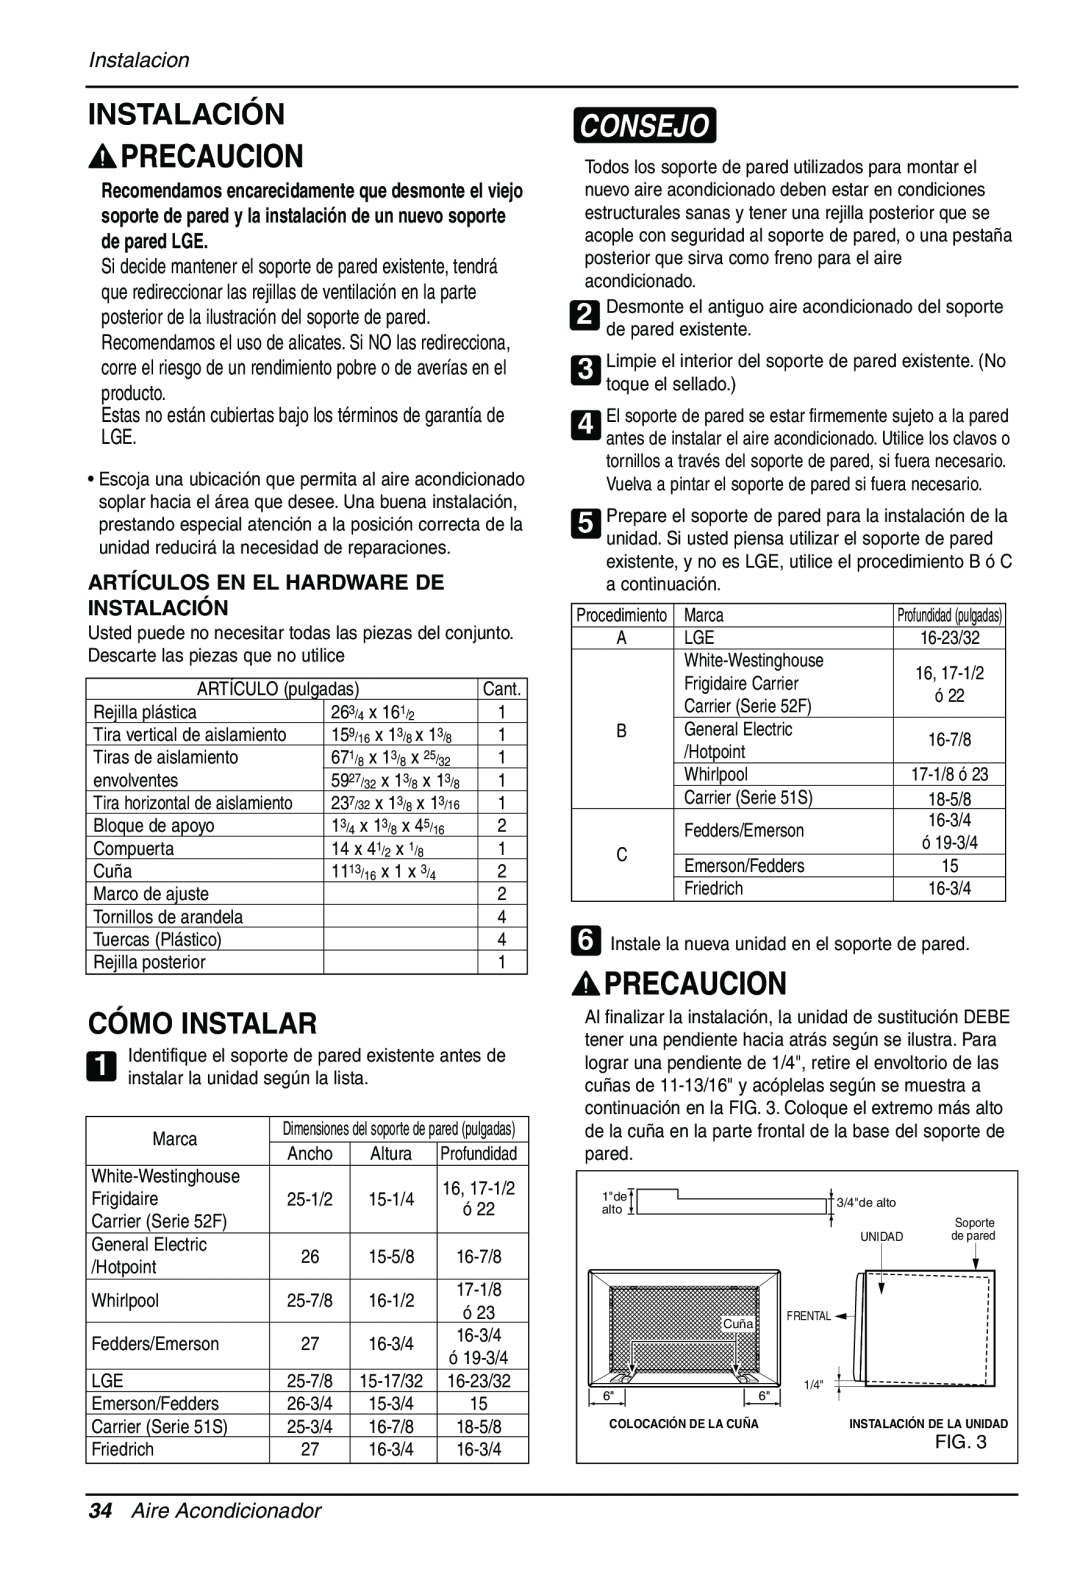 Sears LT103CNR manual Cómo Instalar, Consejo, Instalacion, Artículos En El Hardware De Instalación, Aire Acondicionador 